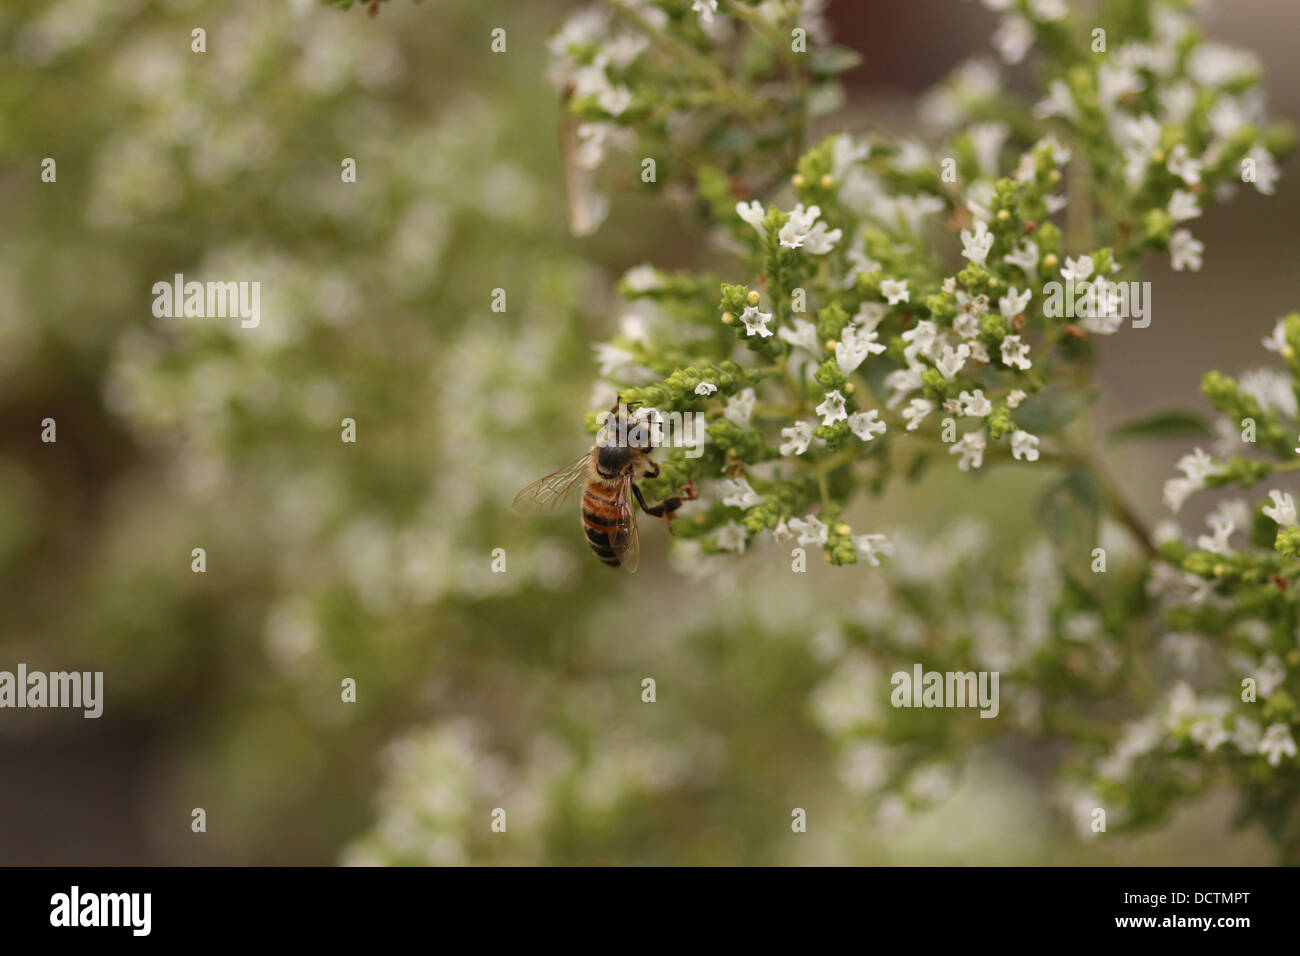 Le miel des abeilles l'alimentation des insectes à partir d'une fleur à l'origan Banque D'Images